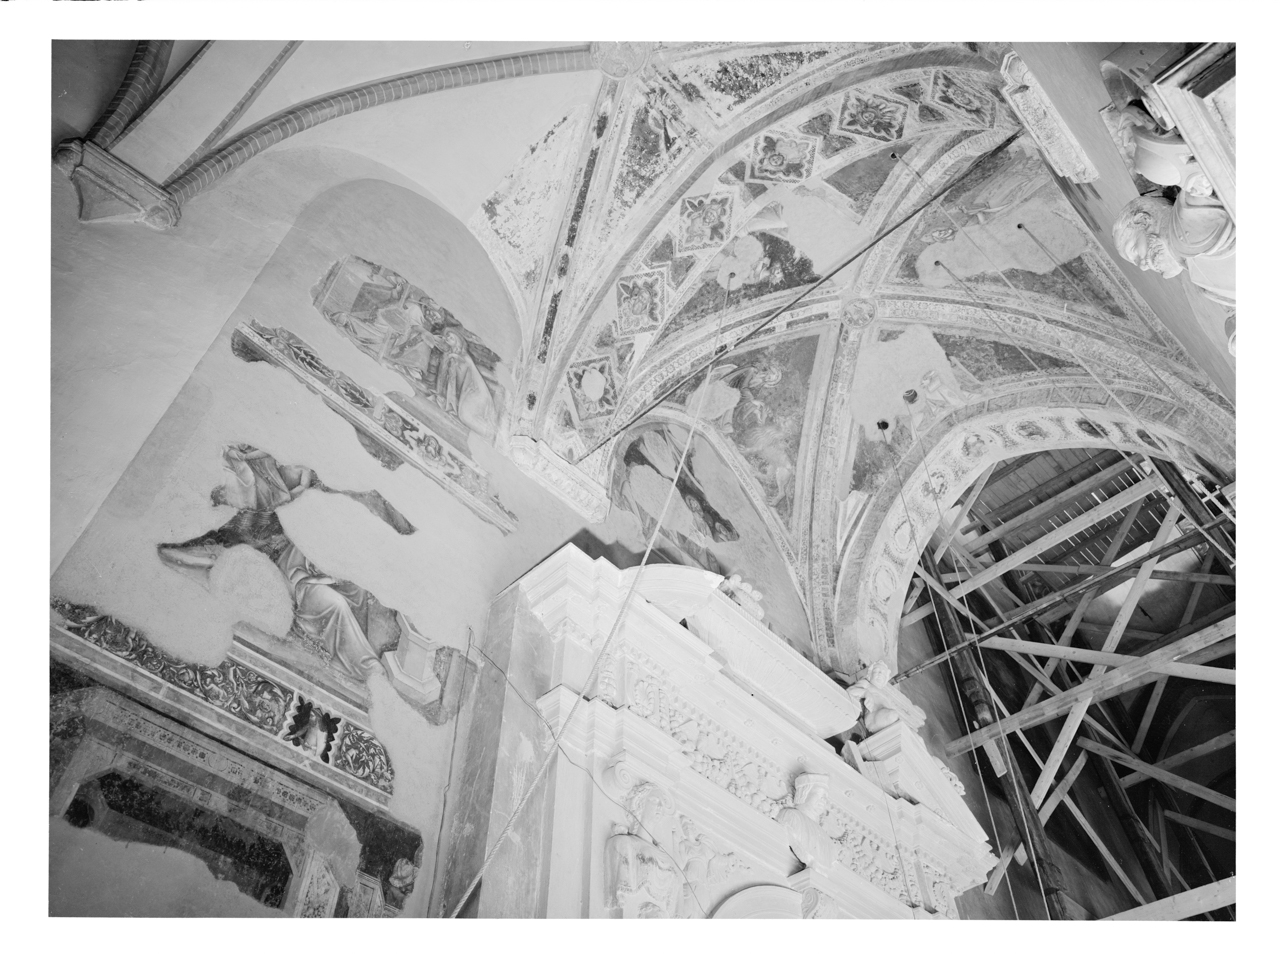 Decorazione architettonica - Fregi (negativo, insieme) di Zagnoli, Alfonso, Vitale da Bologna, Simone dei Crocifissi (metà XX)